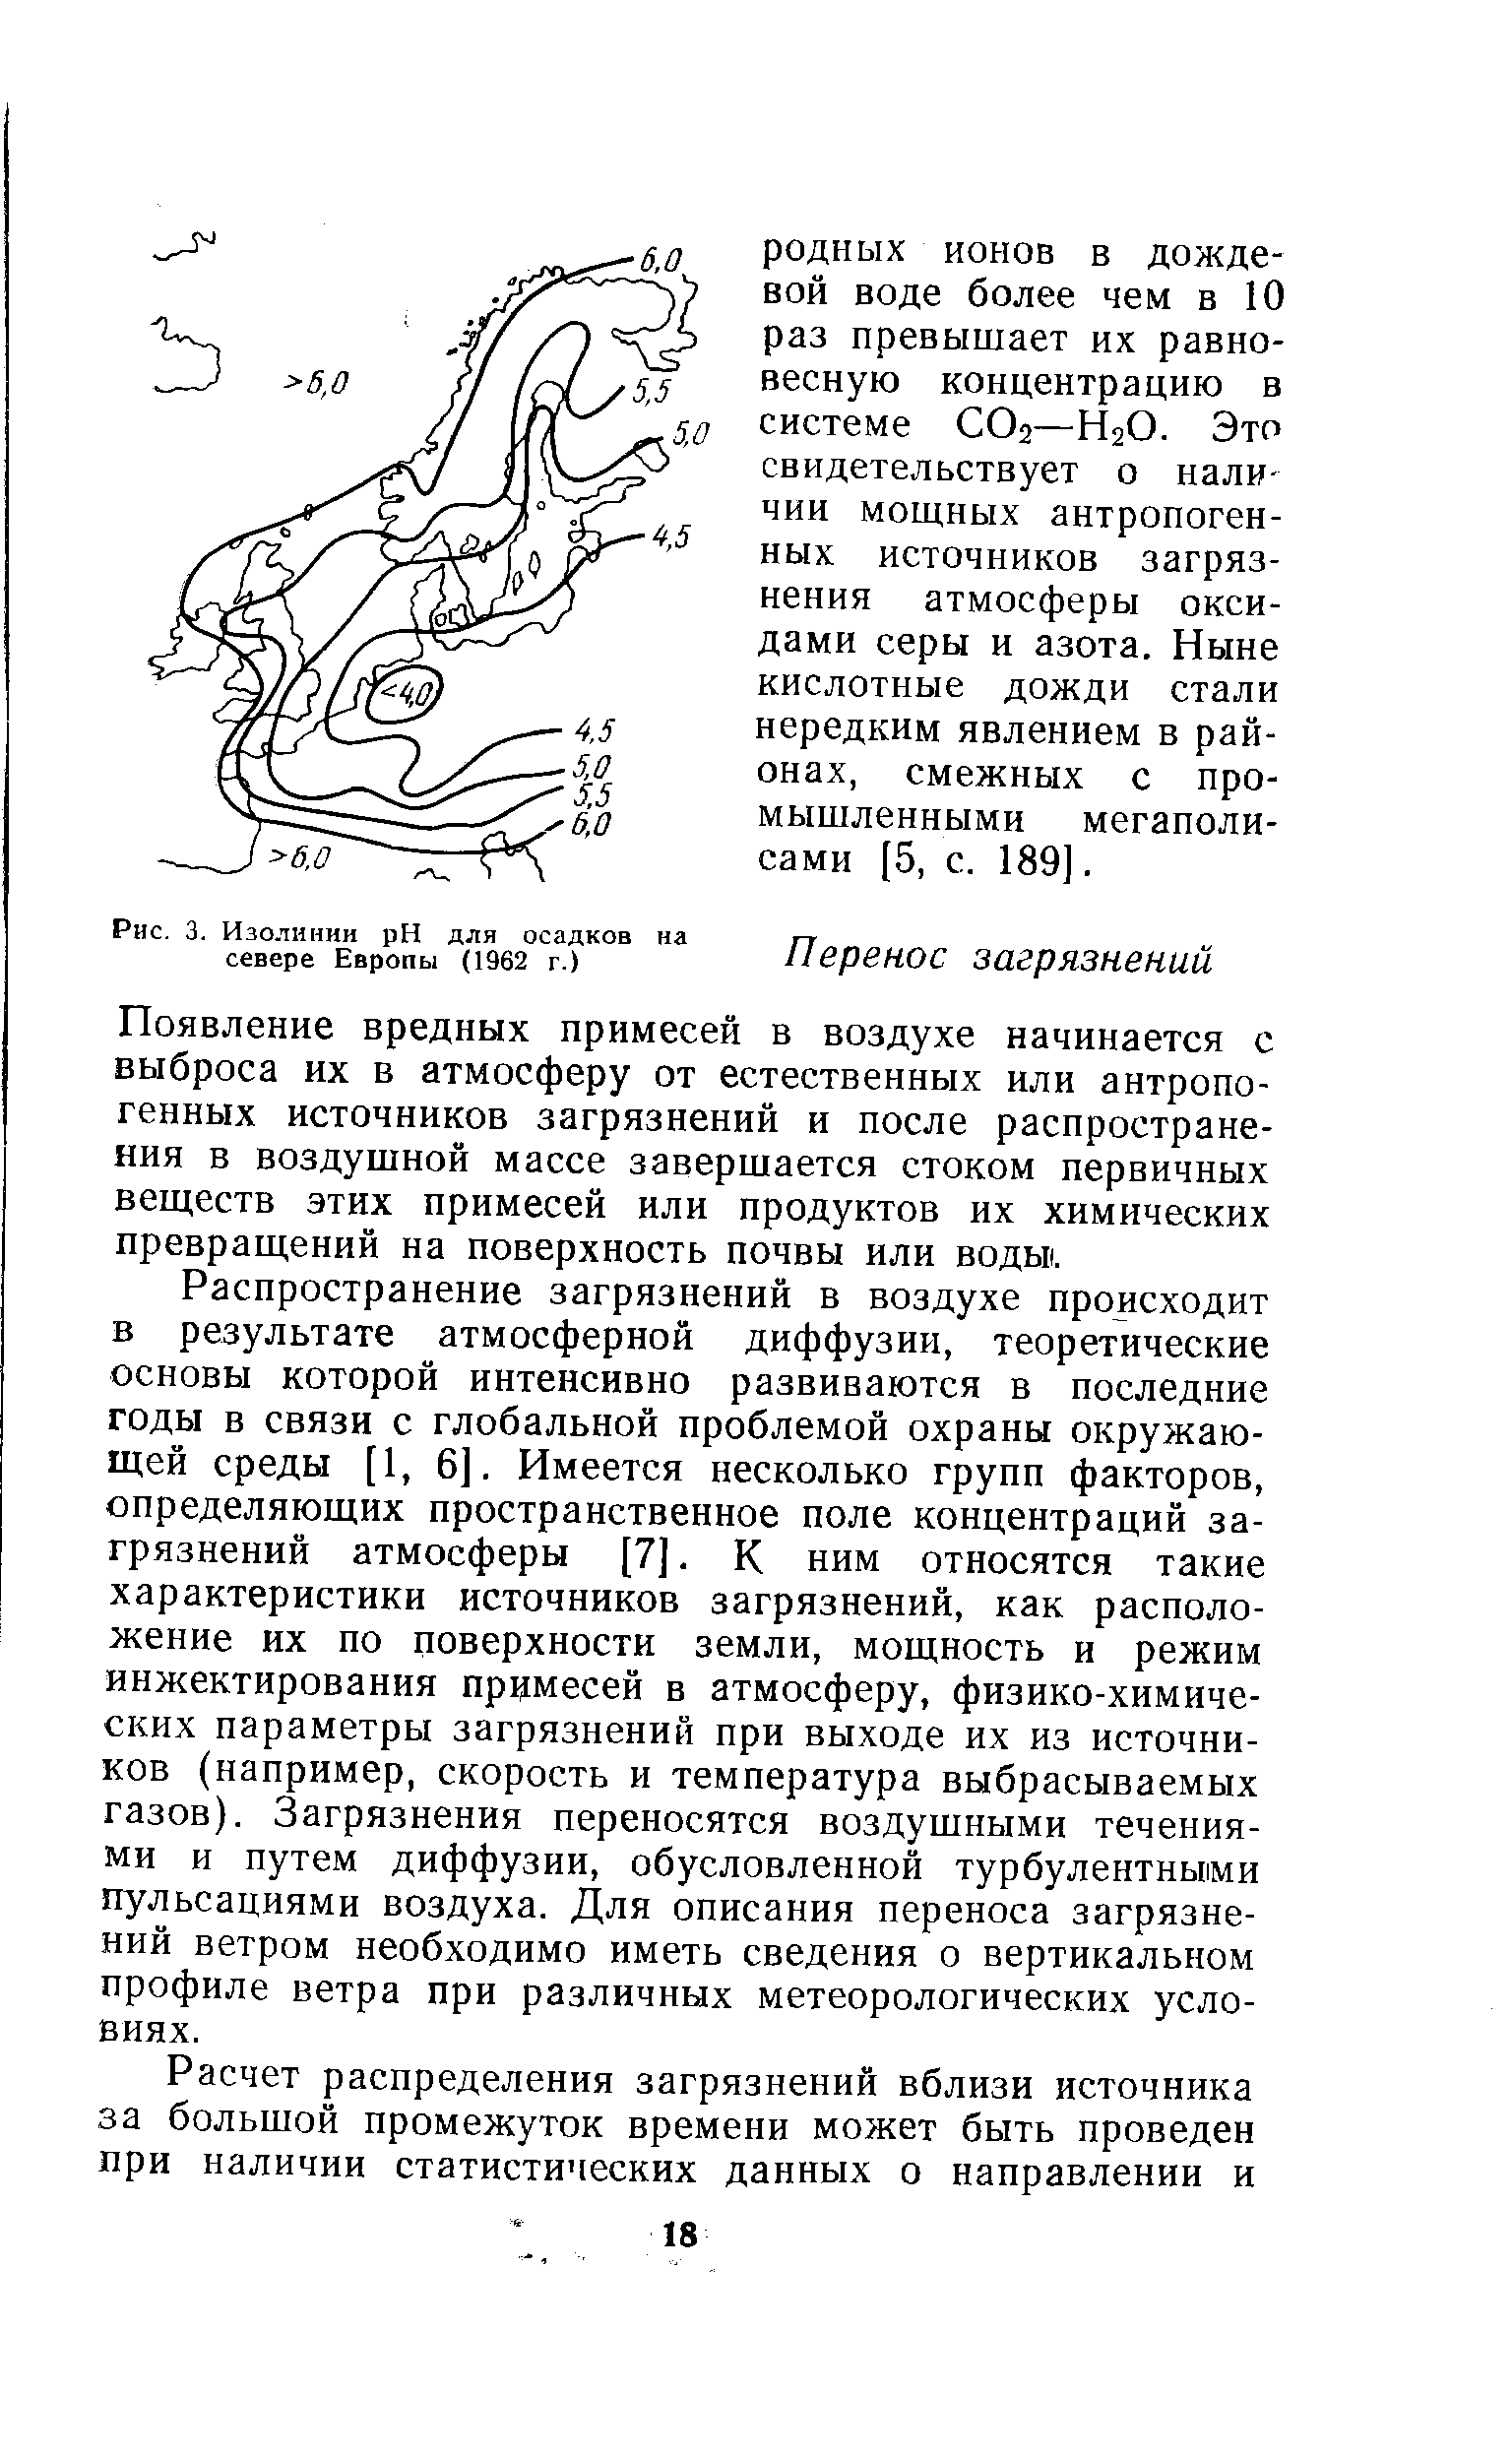 Рис. 3. Изолинии pH для осадков на севере Европы (1962 г.)
